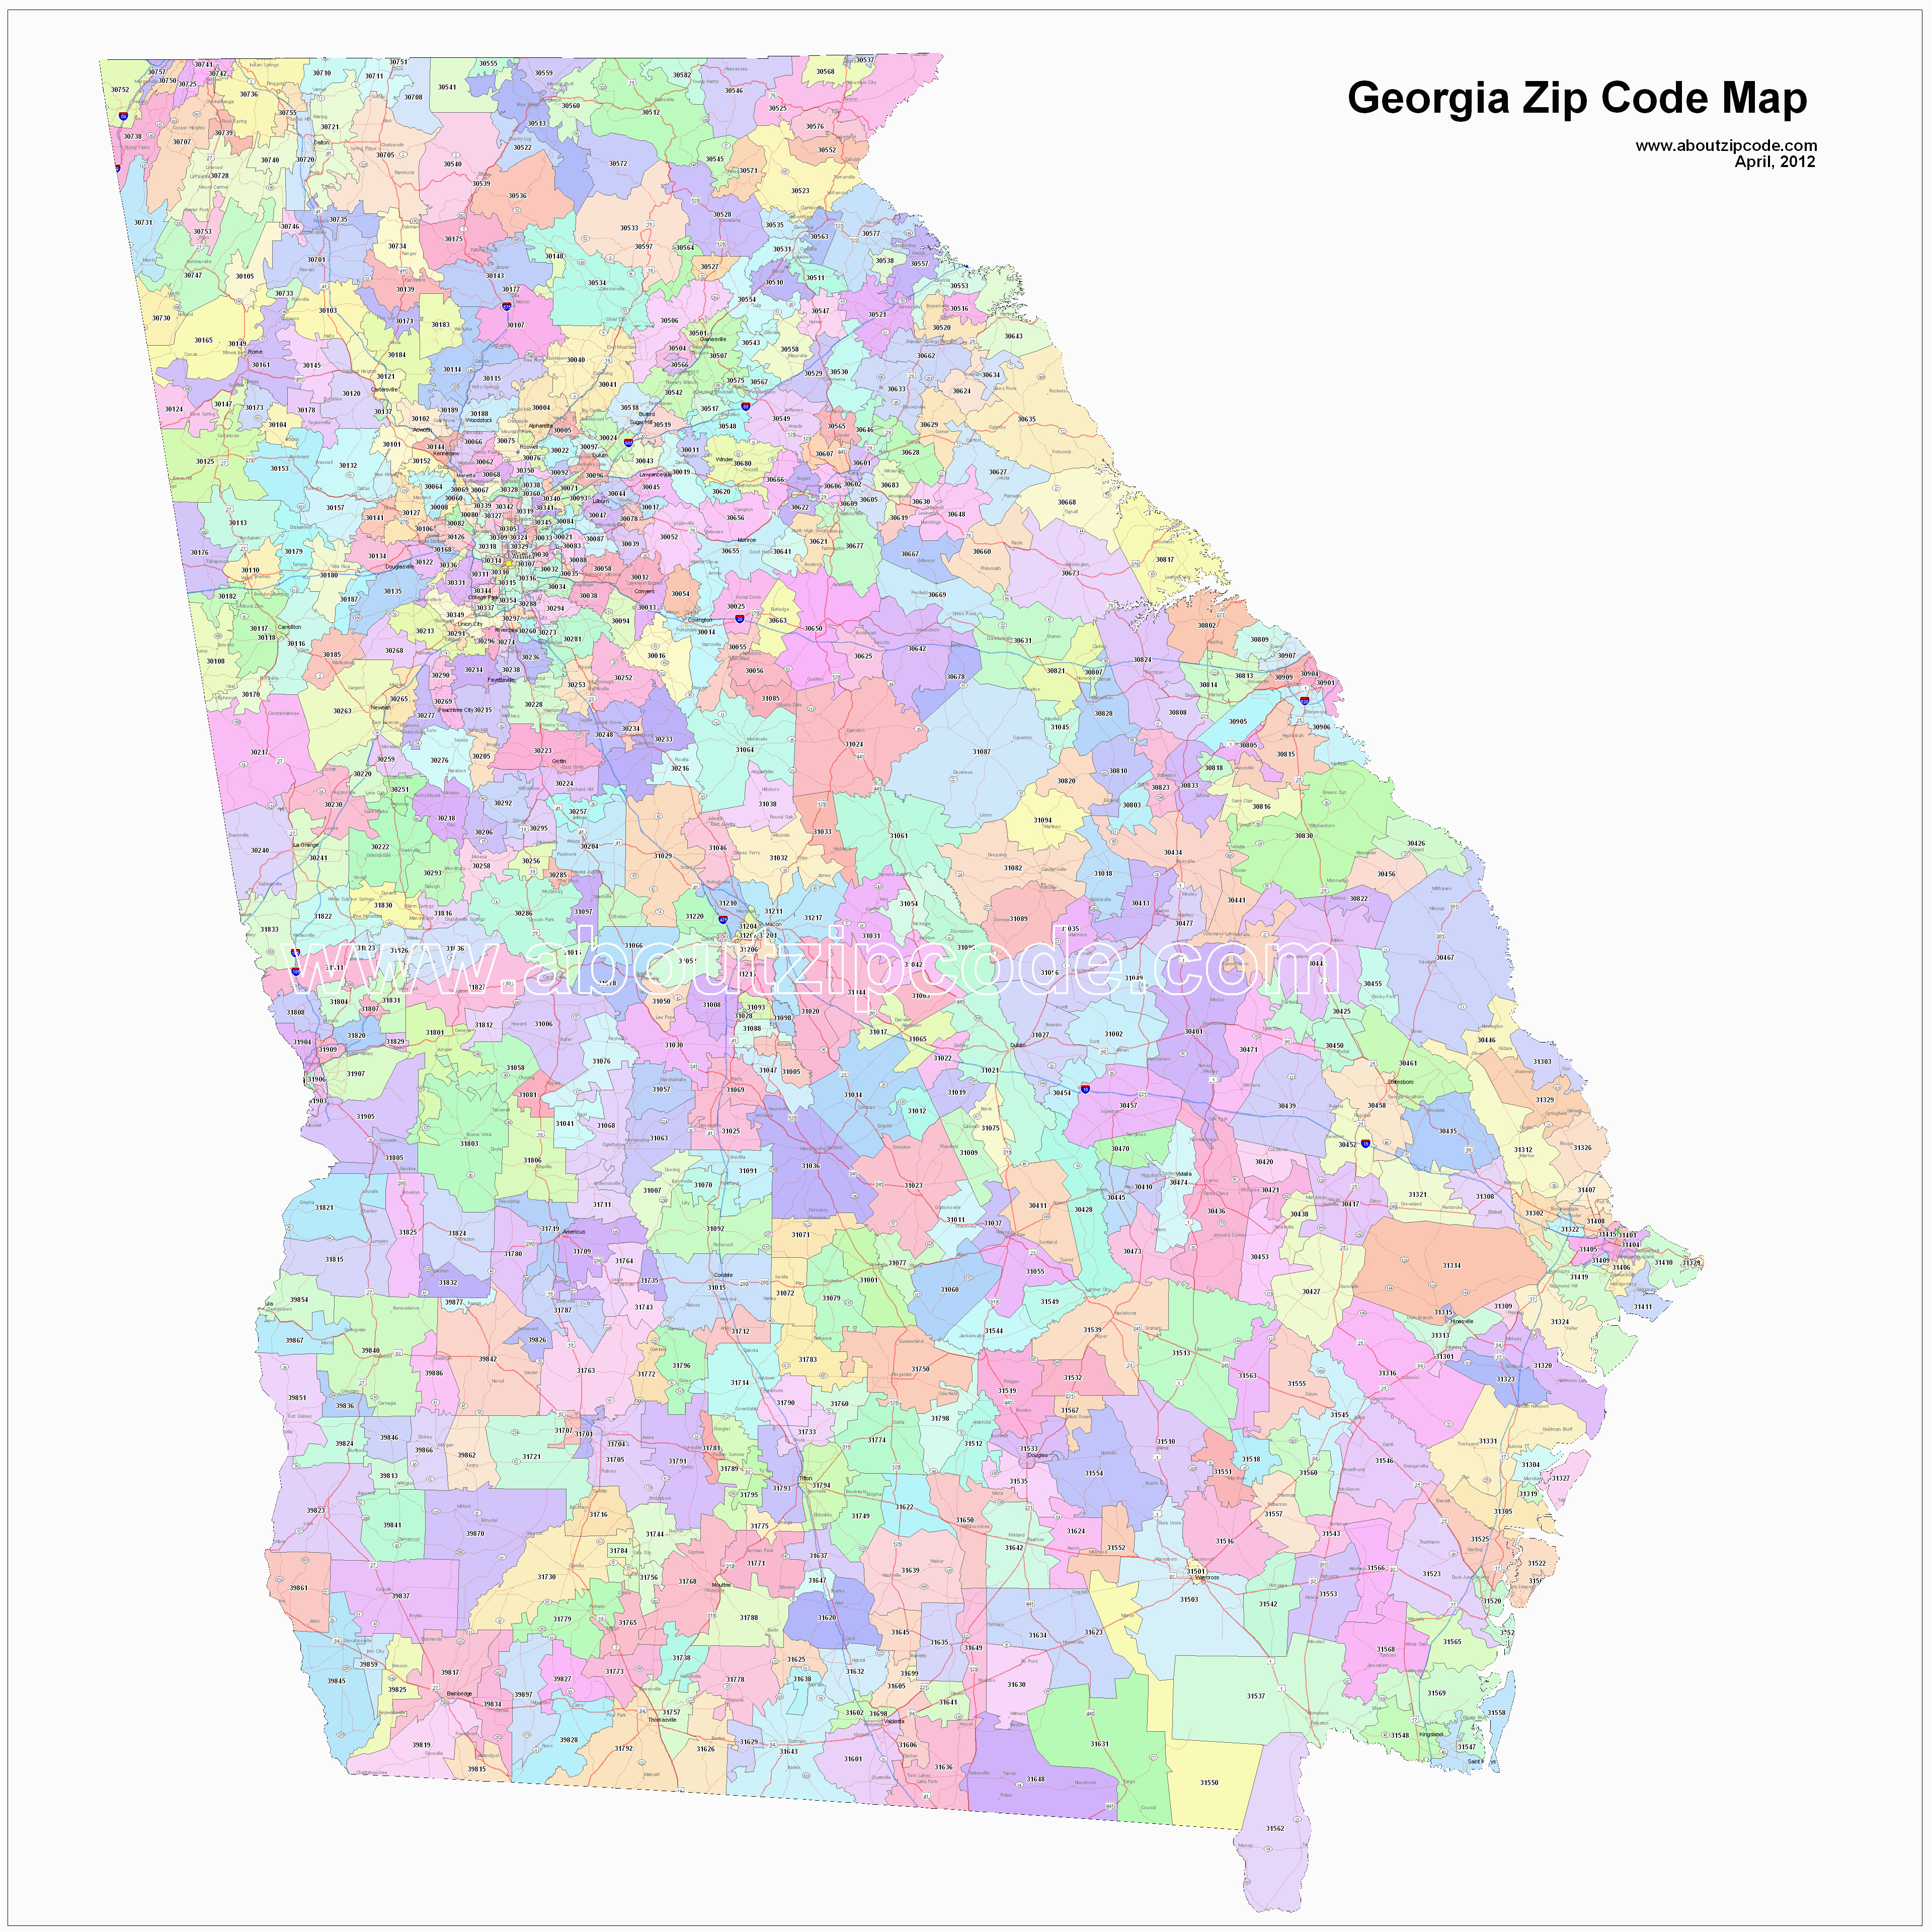 Macon Georgia Zip Code Map Georgia Zip Code Maps Free Georgia Zip Code Maps